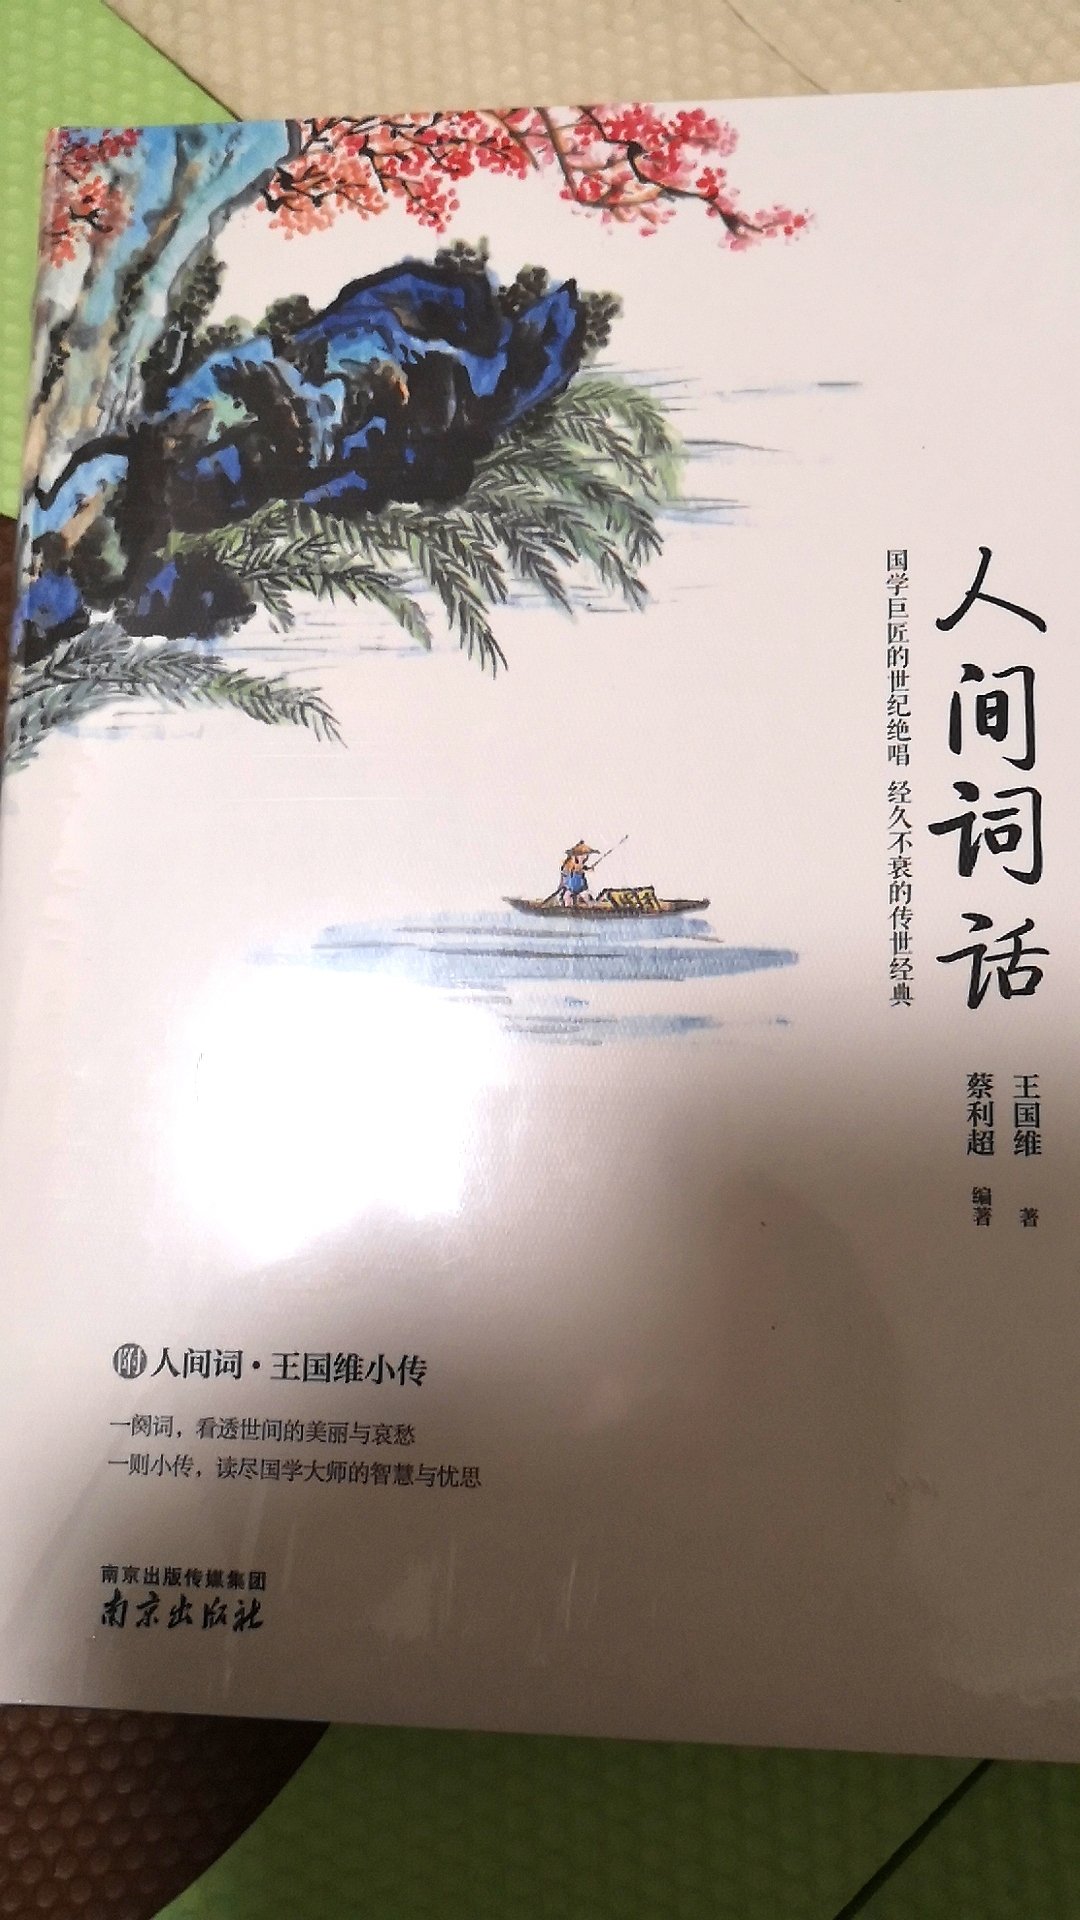 学中国现代文学史，不能不看王国维先生的《人间词话》，这是现代人对古代文学的重新解读新开始。